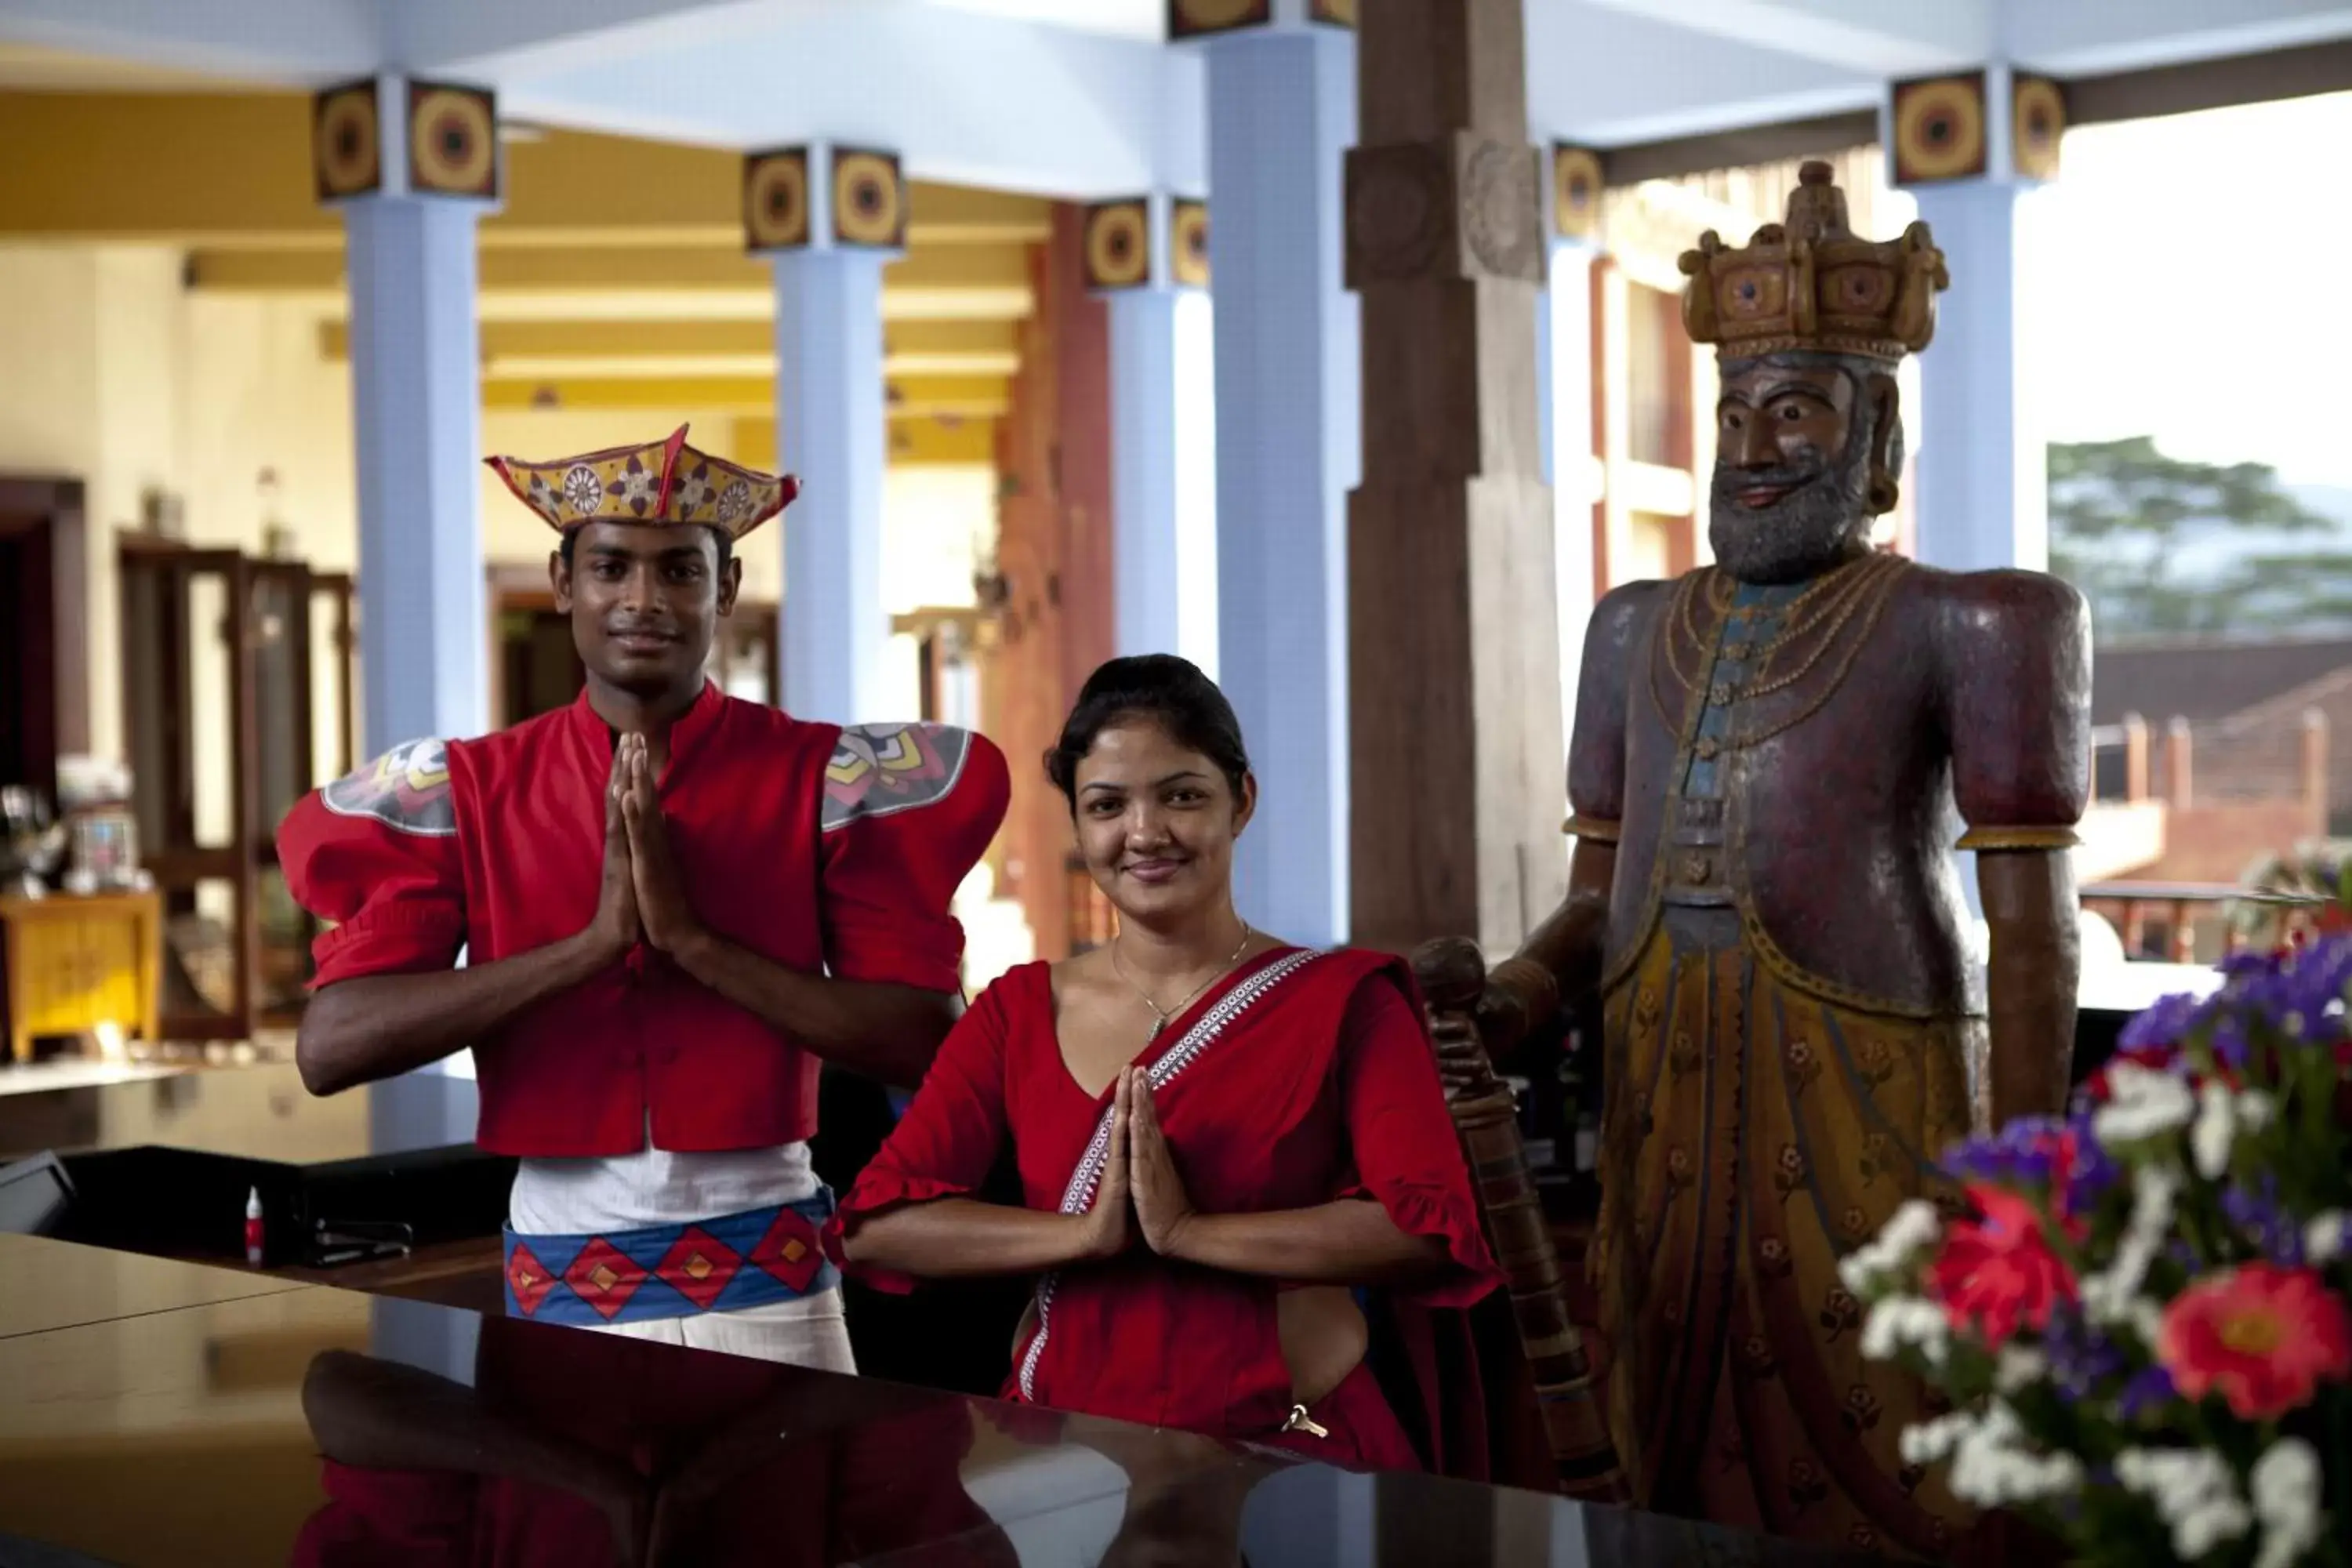 Lobby or reception in Amaya Hills Kandy